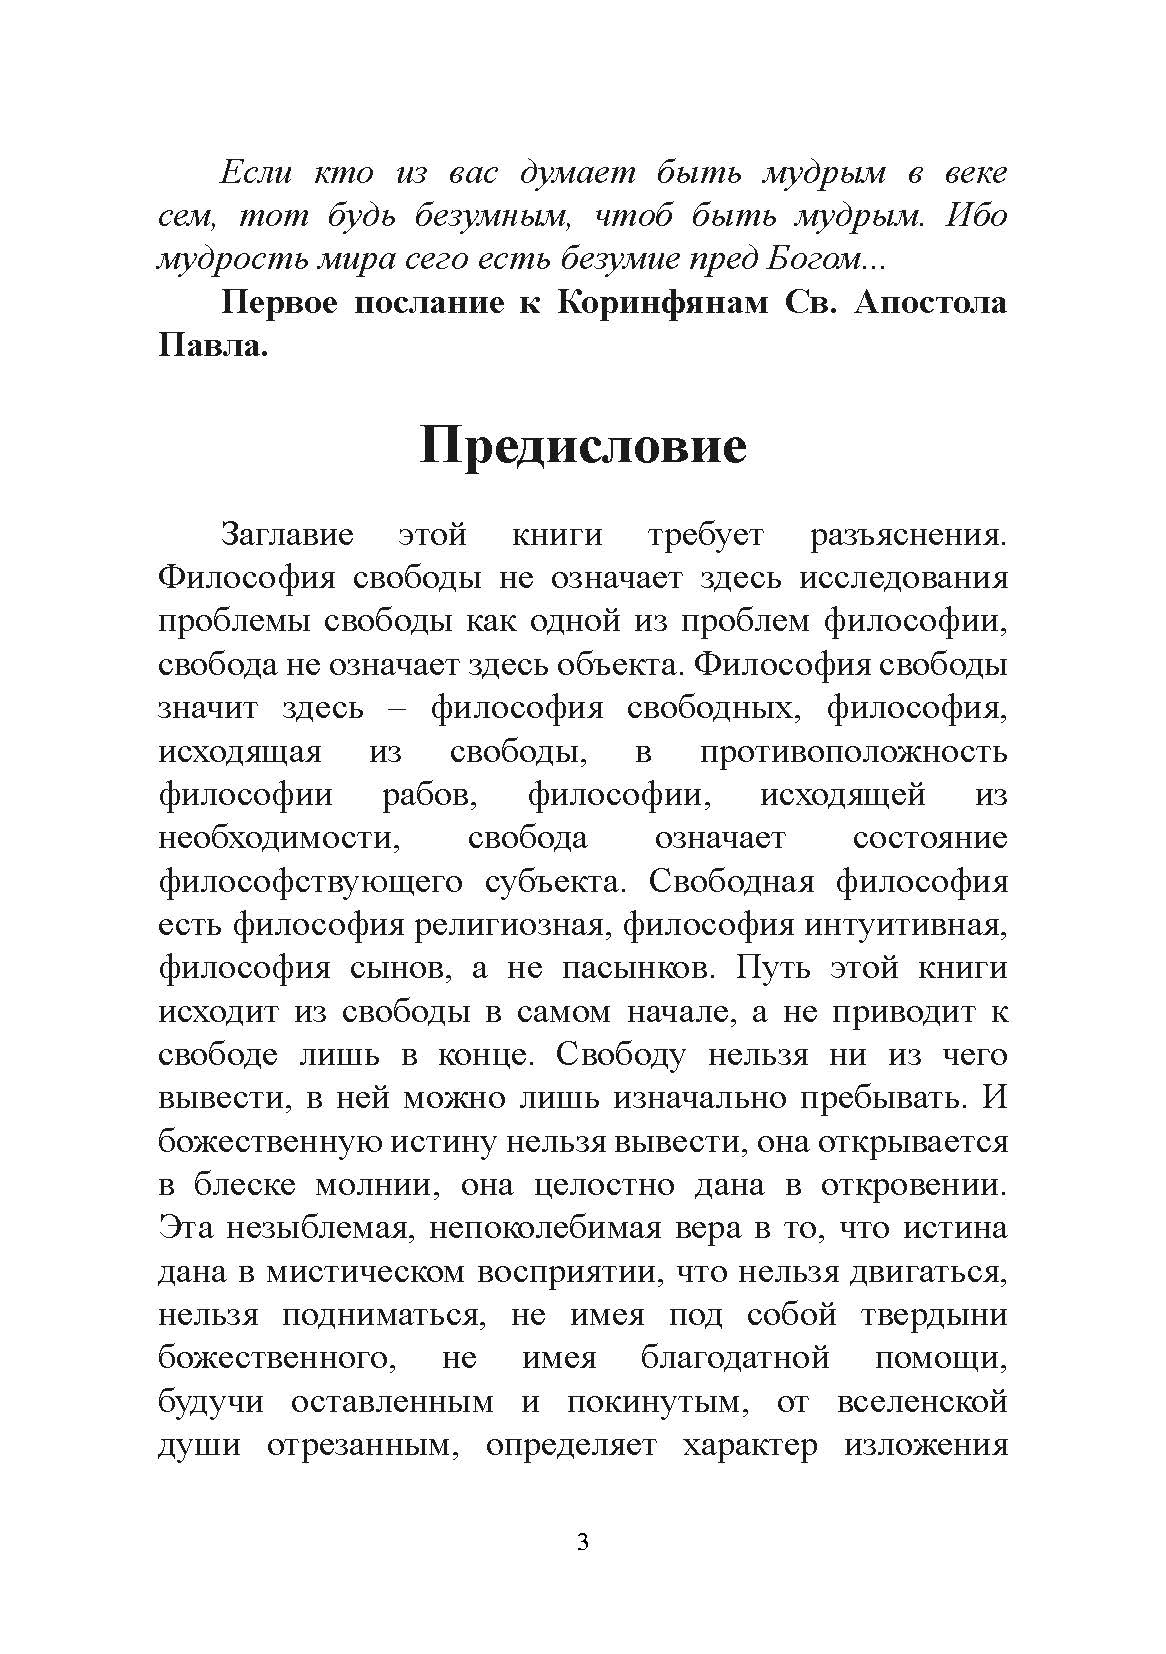 Философия свободы. Николай Бердяев. Автор — Николай Бердяев. 